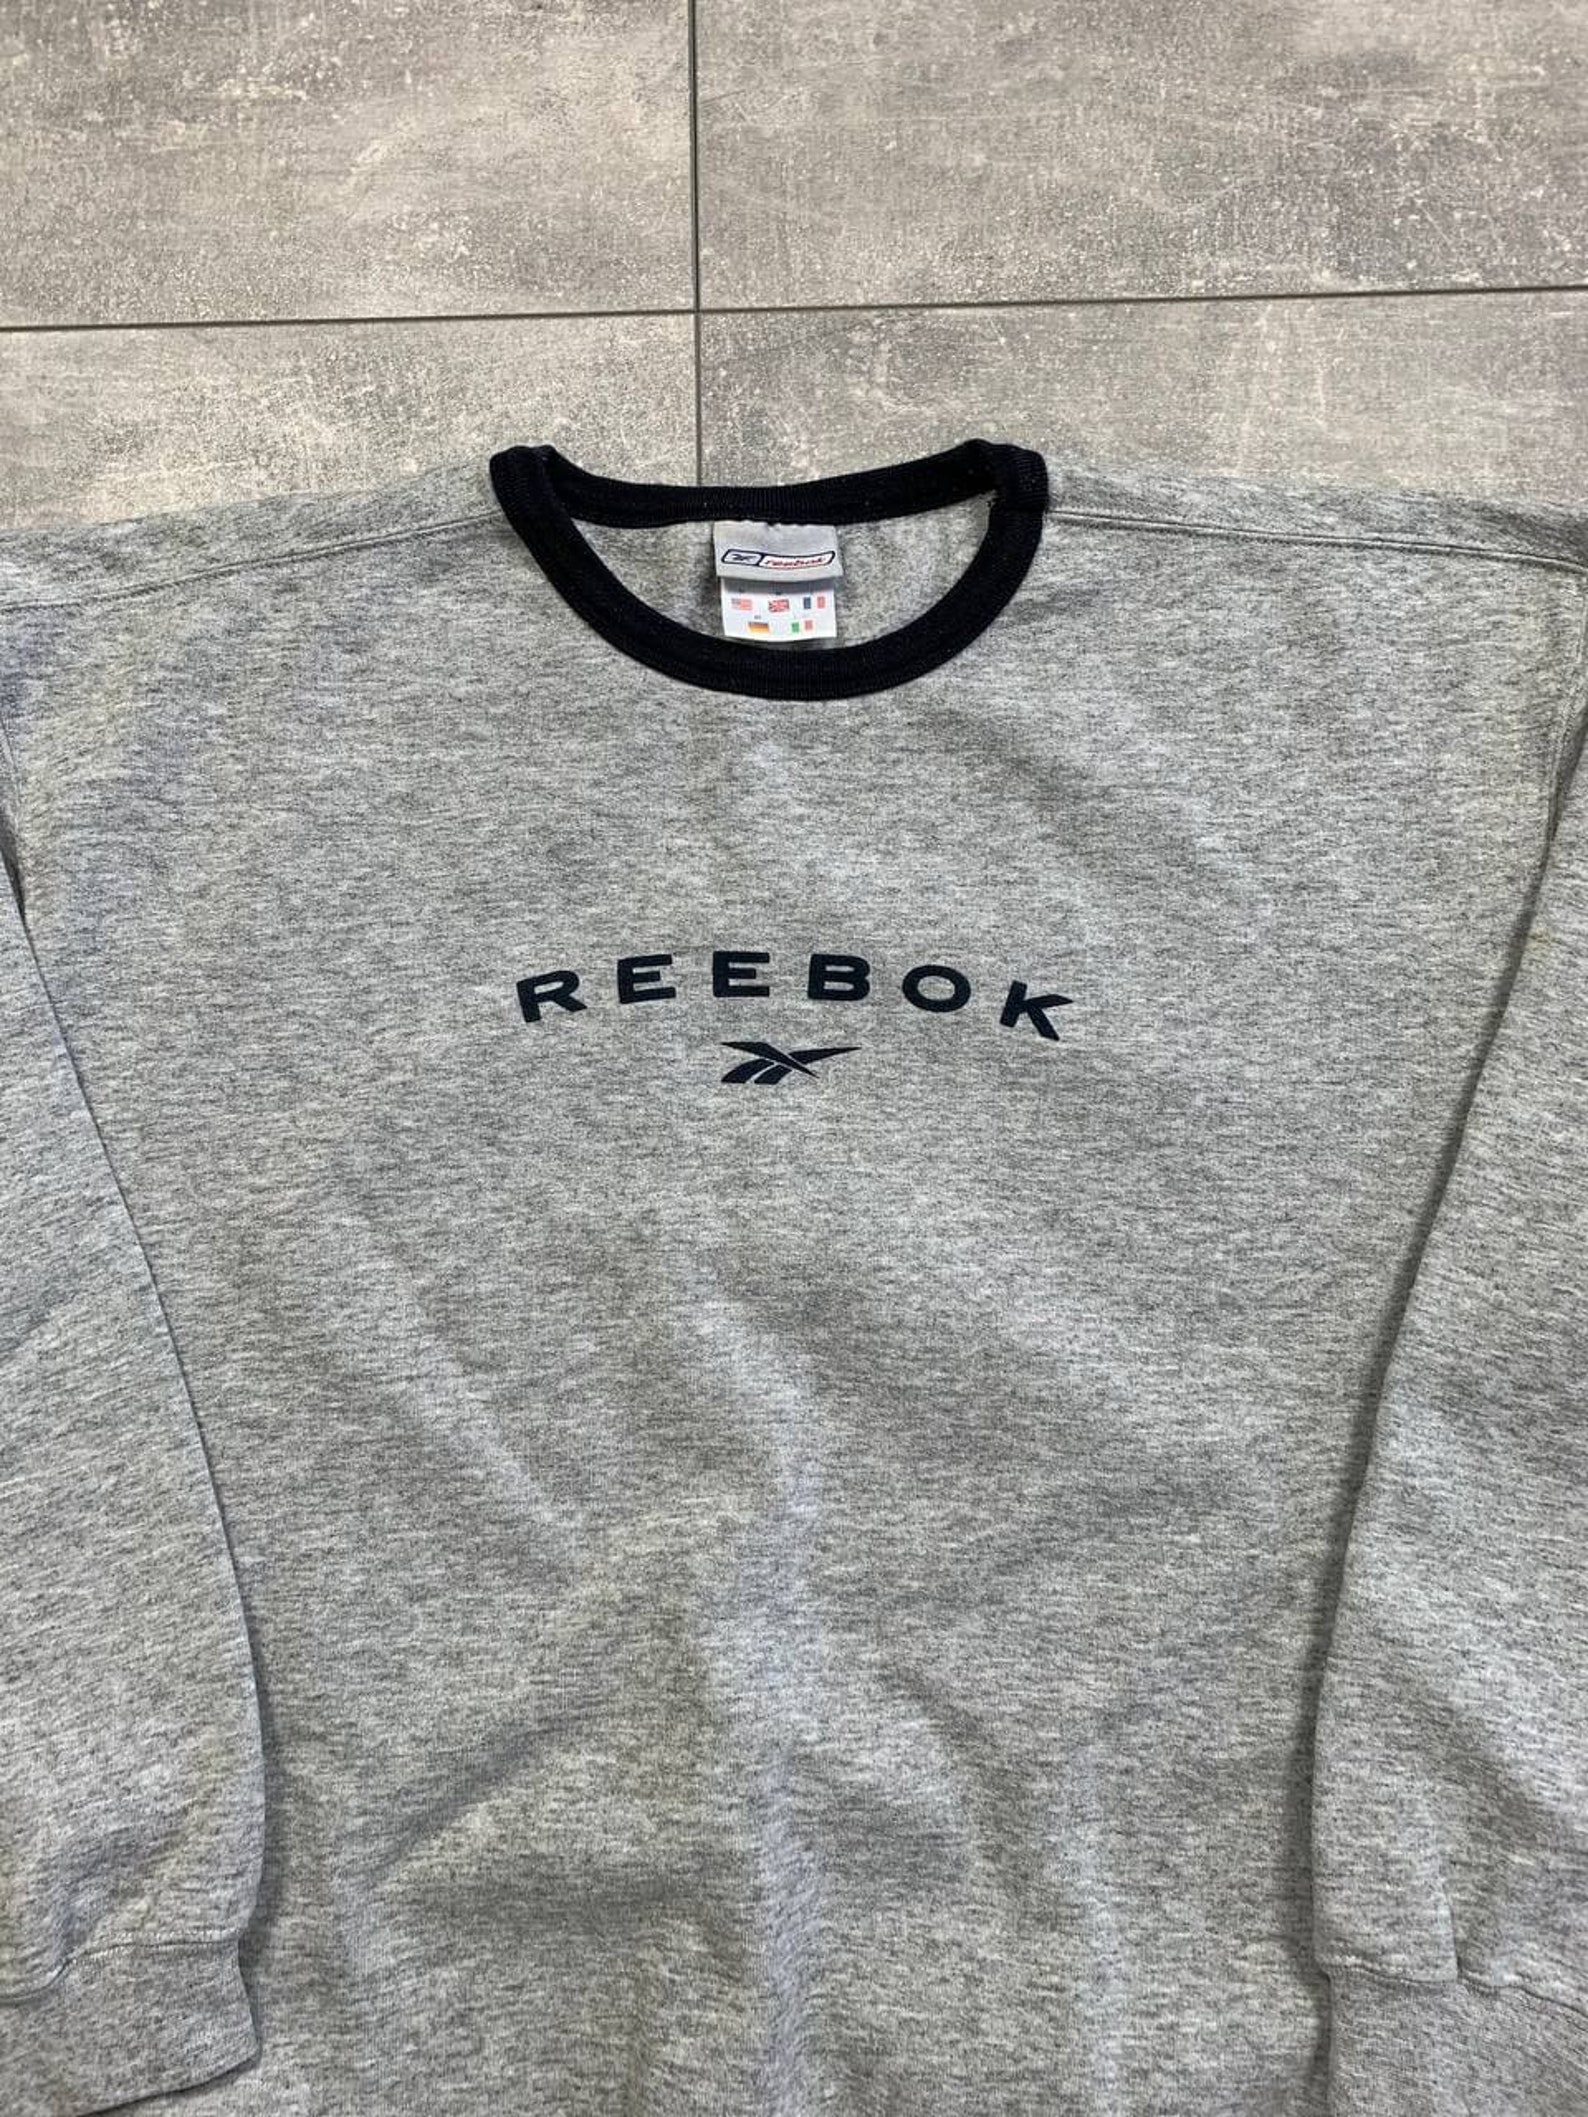 Reebok vintage sweatshirt crewneck big logo | Etsy